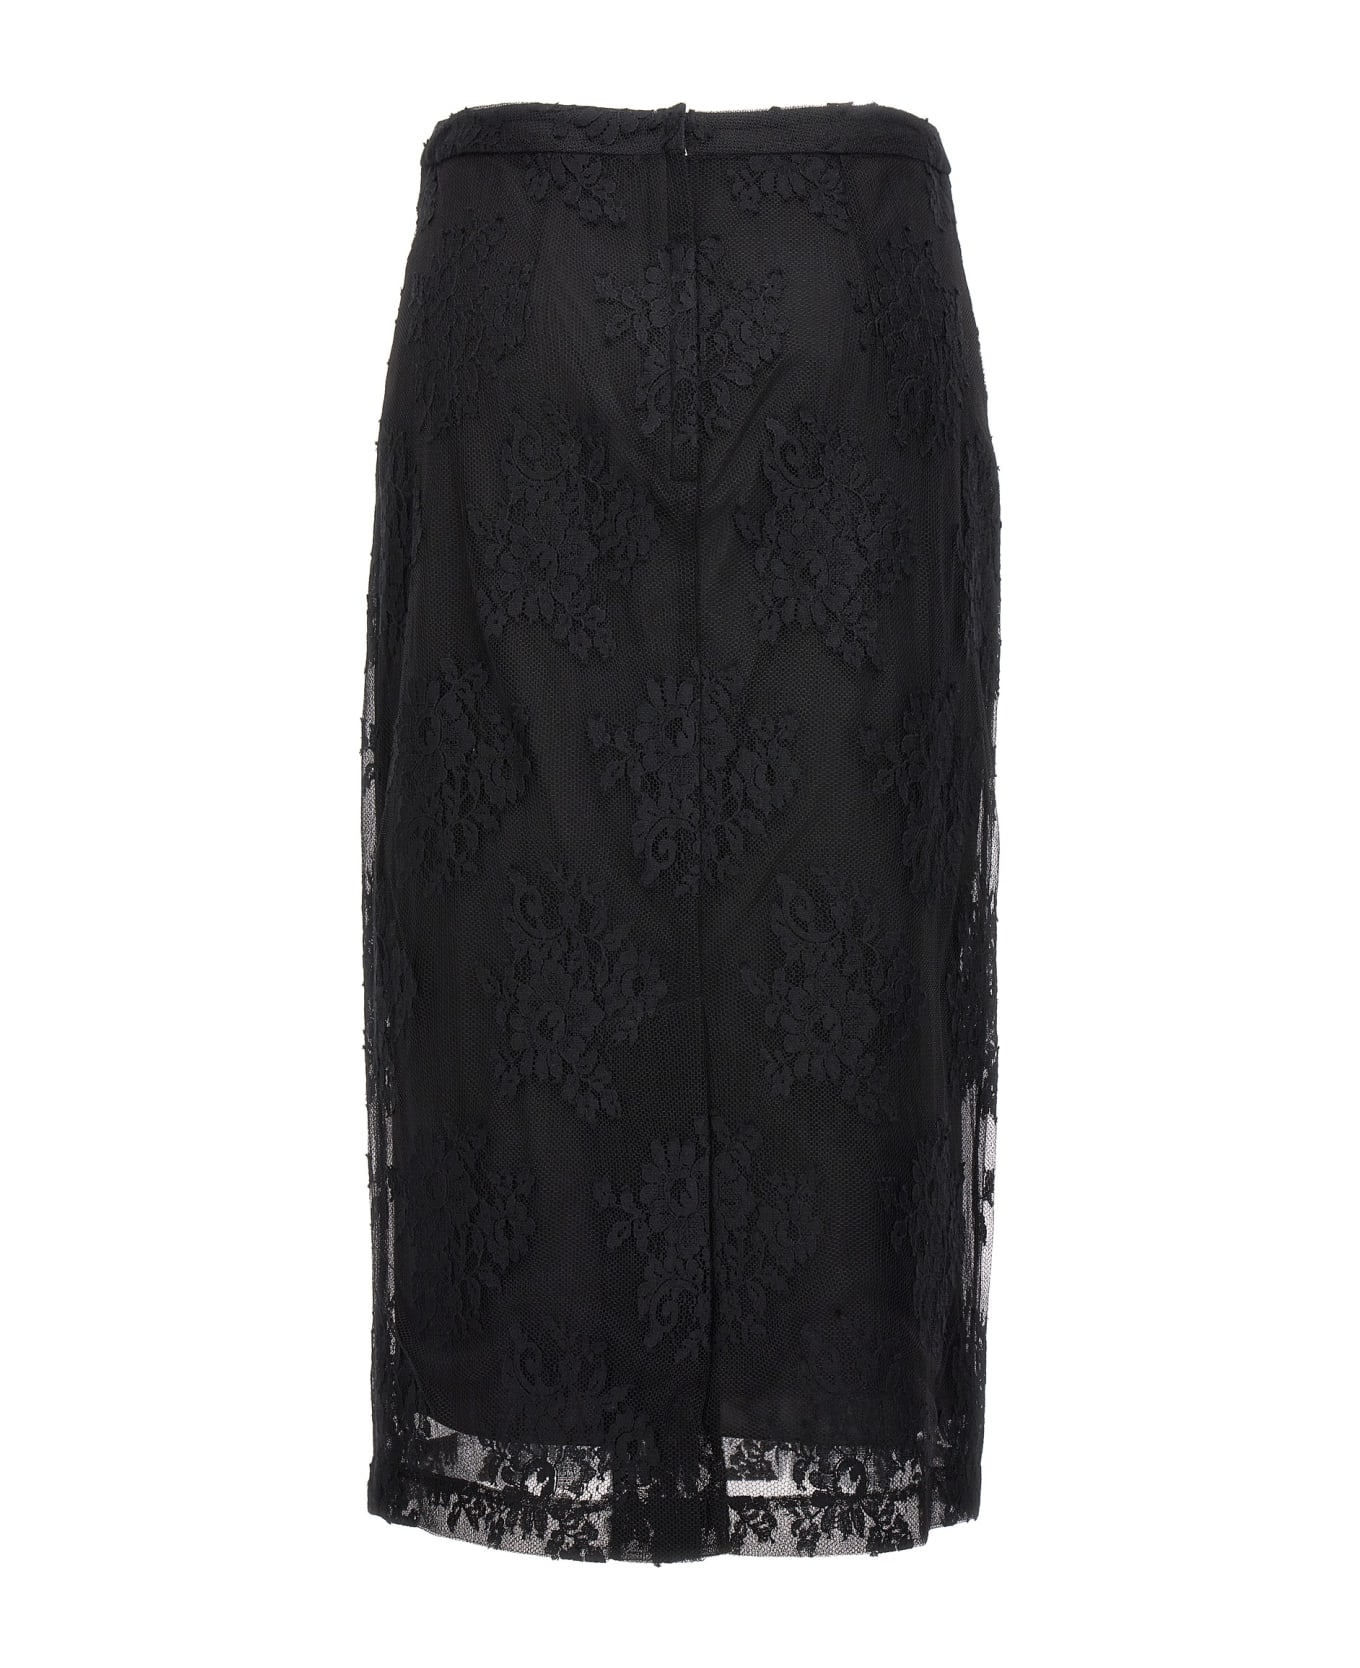 Dolce & Gabbana Lace Sheath Skirt - Black  